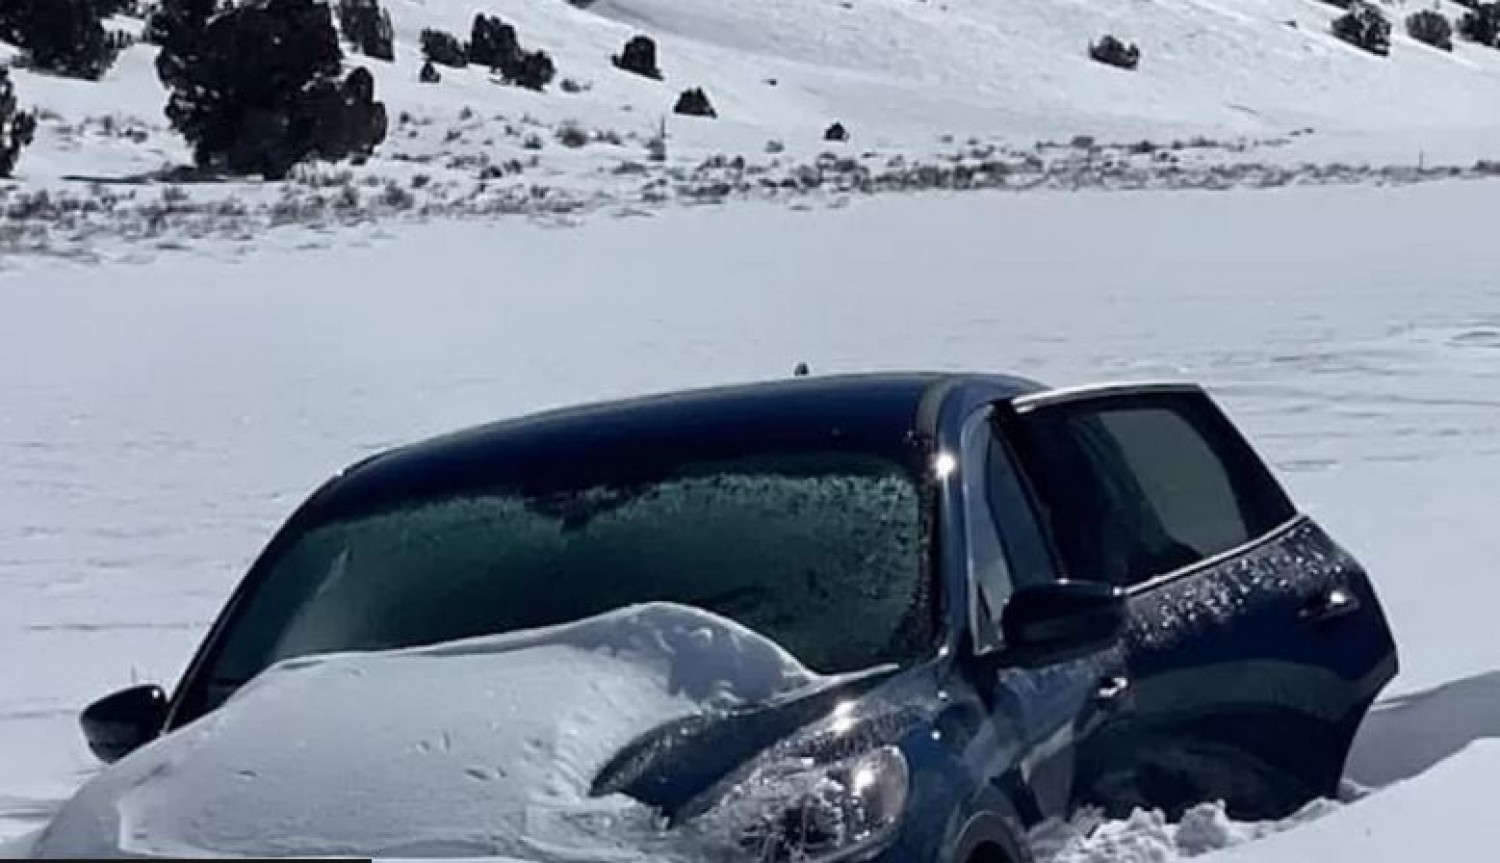 Egy teljes hétre a hóban ragadt autójában egy 81 éves férfi - így élt túl